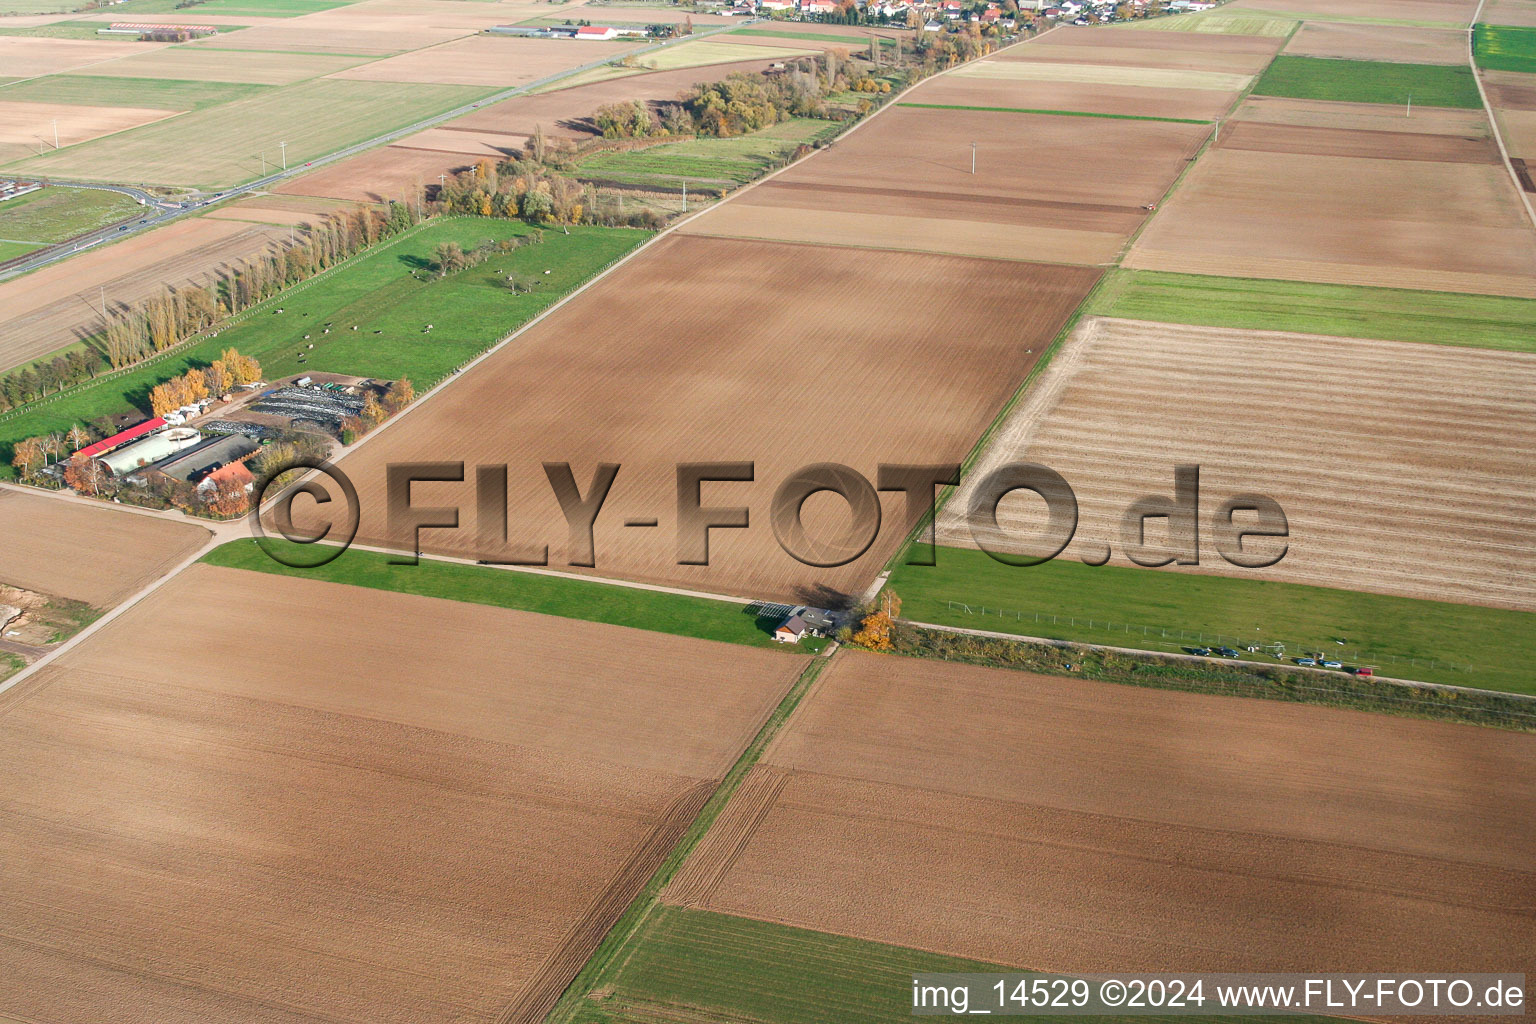 Photographie aérienne de Aérodrome modèle à Offenbach an der Queich dans le département Rhénanie-Palatinat, Allemagne